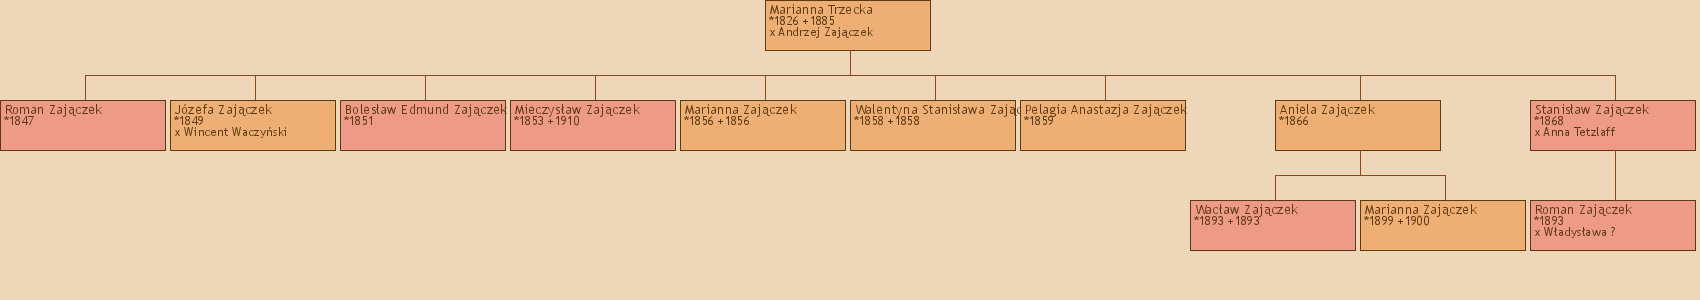 Drzewo genealogiczne - Marianna Trzecka